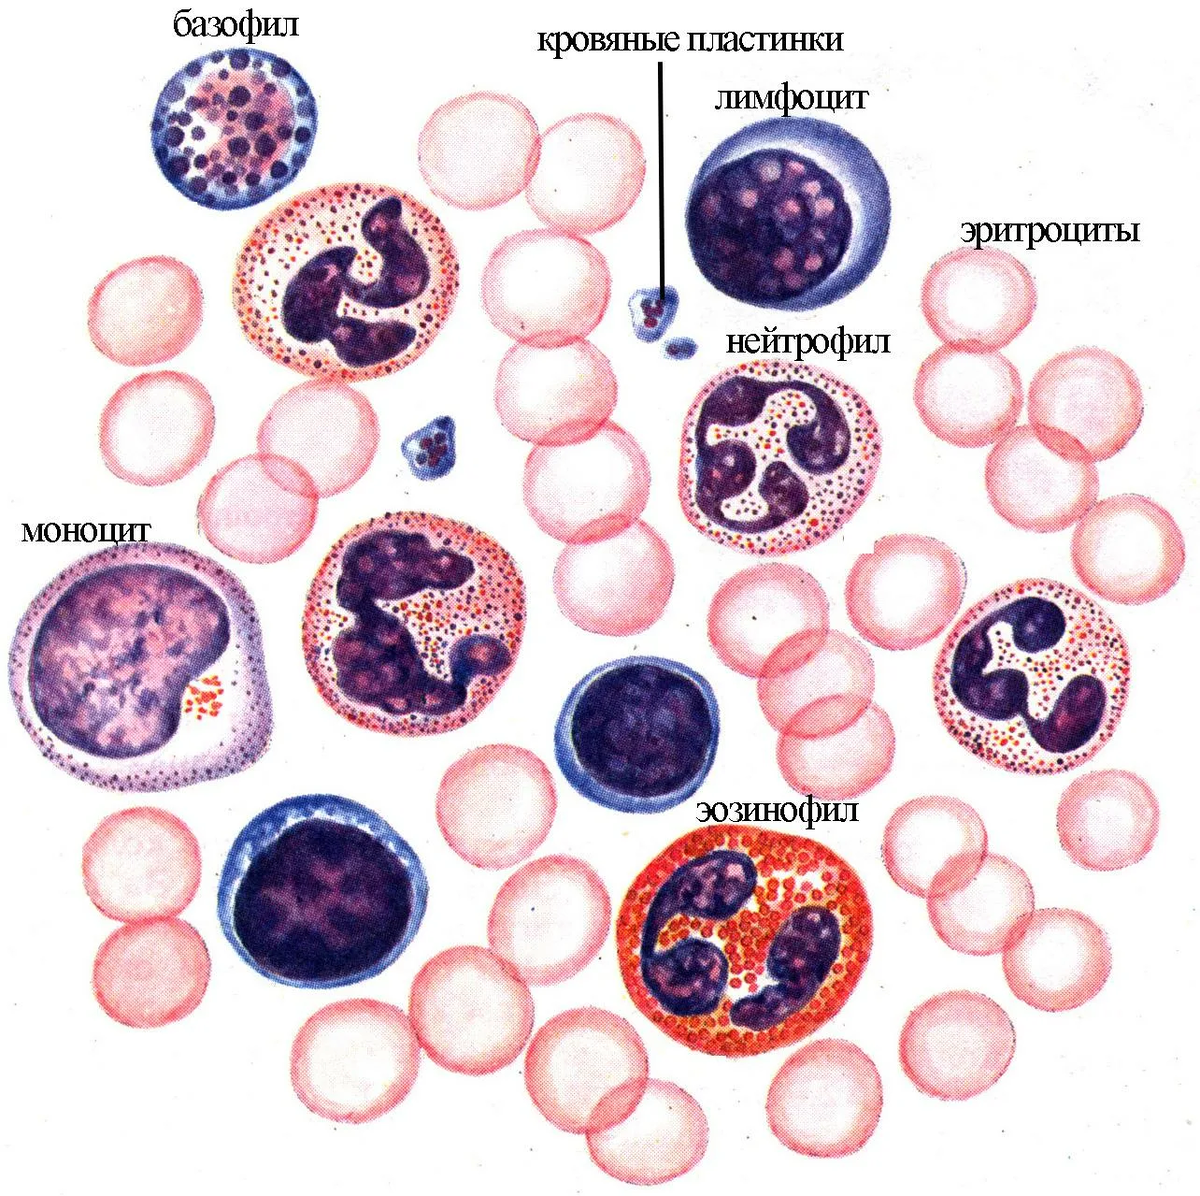 Здоровая кровь содержит определенный процент лейкоцитов (они же белые клетки крови), которые, как часть иммунной системы организма, помогают организму бороться с инфекцией.